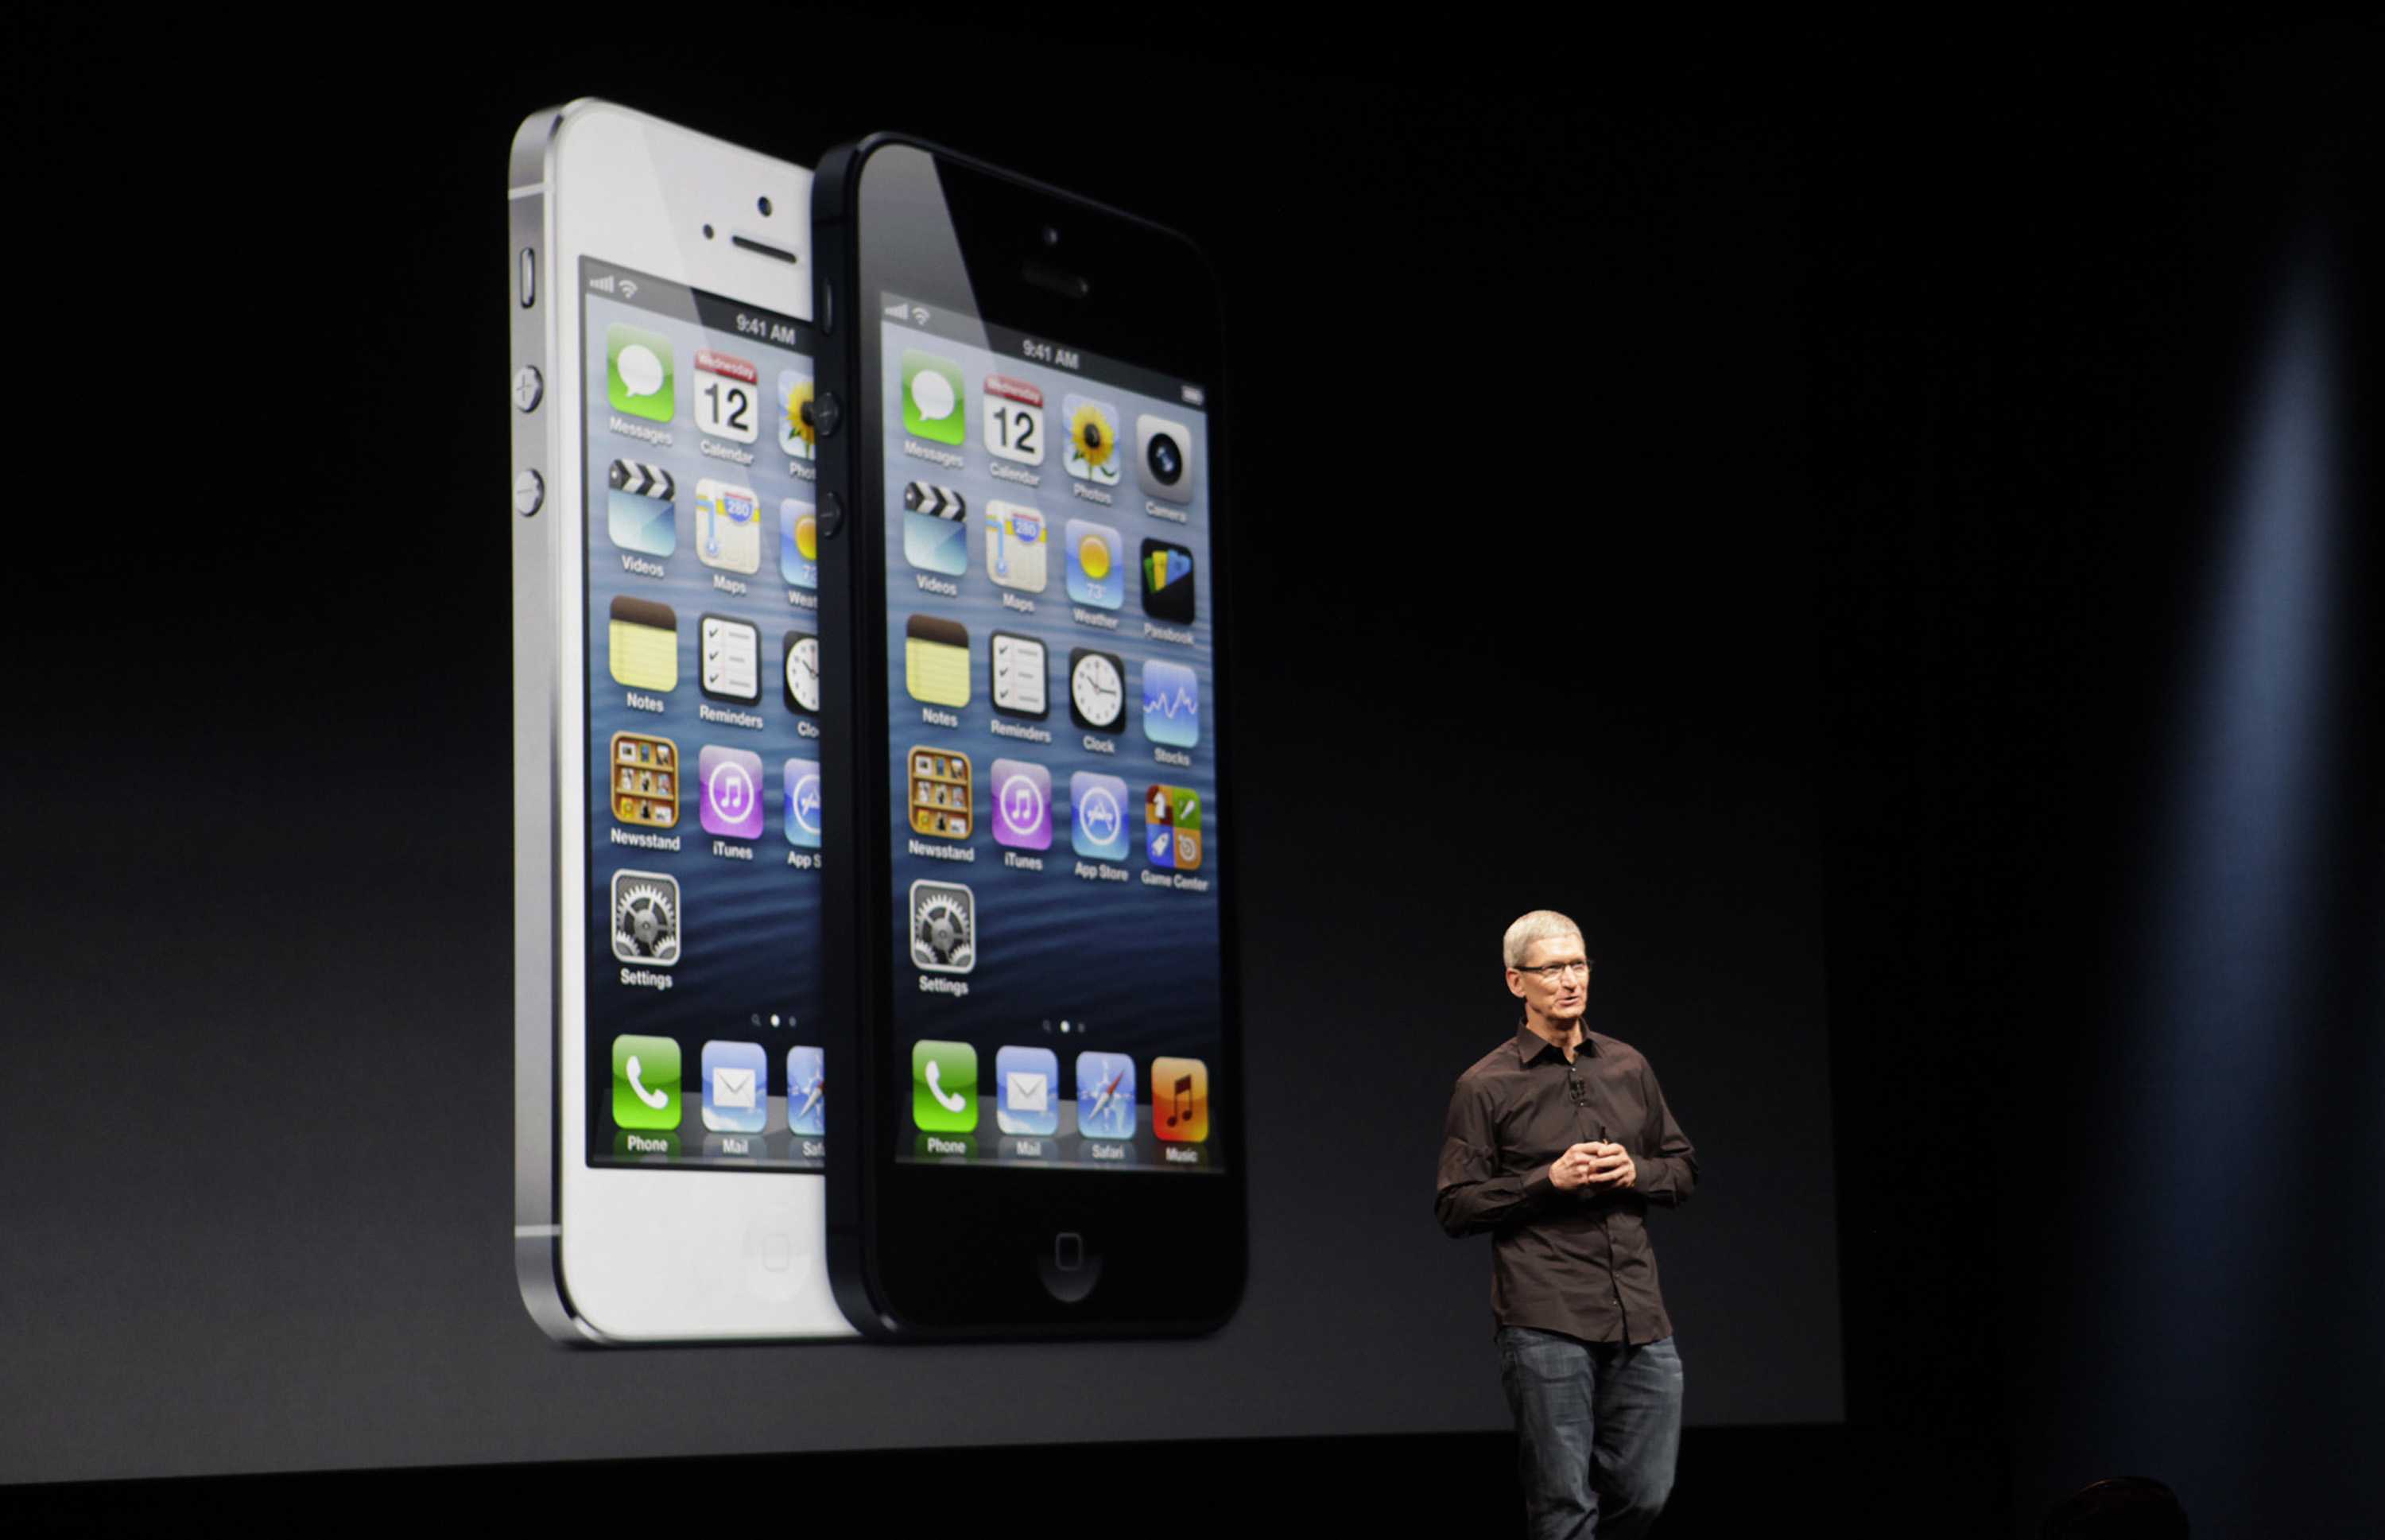 Уникальный айфон. Стив Джобс презентация iphone 5. Стив Джобс презентация iphone 4s. Apple iphone 5. Айфон Аппле презентация айфона.